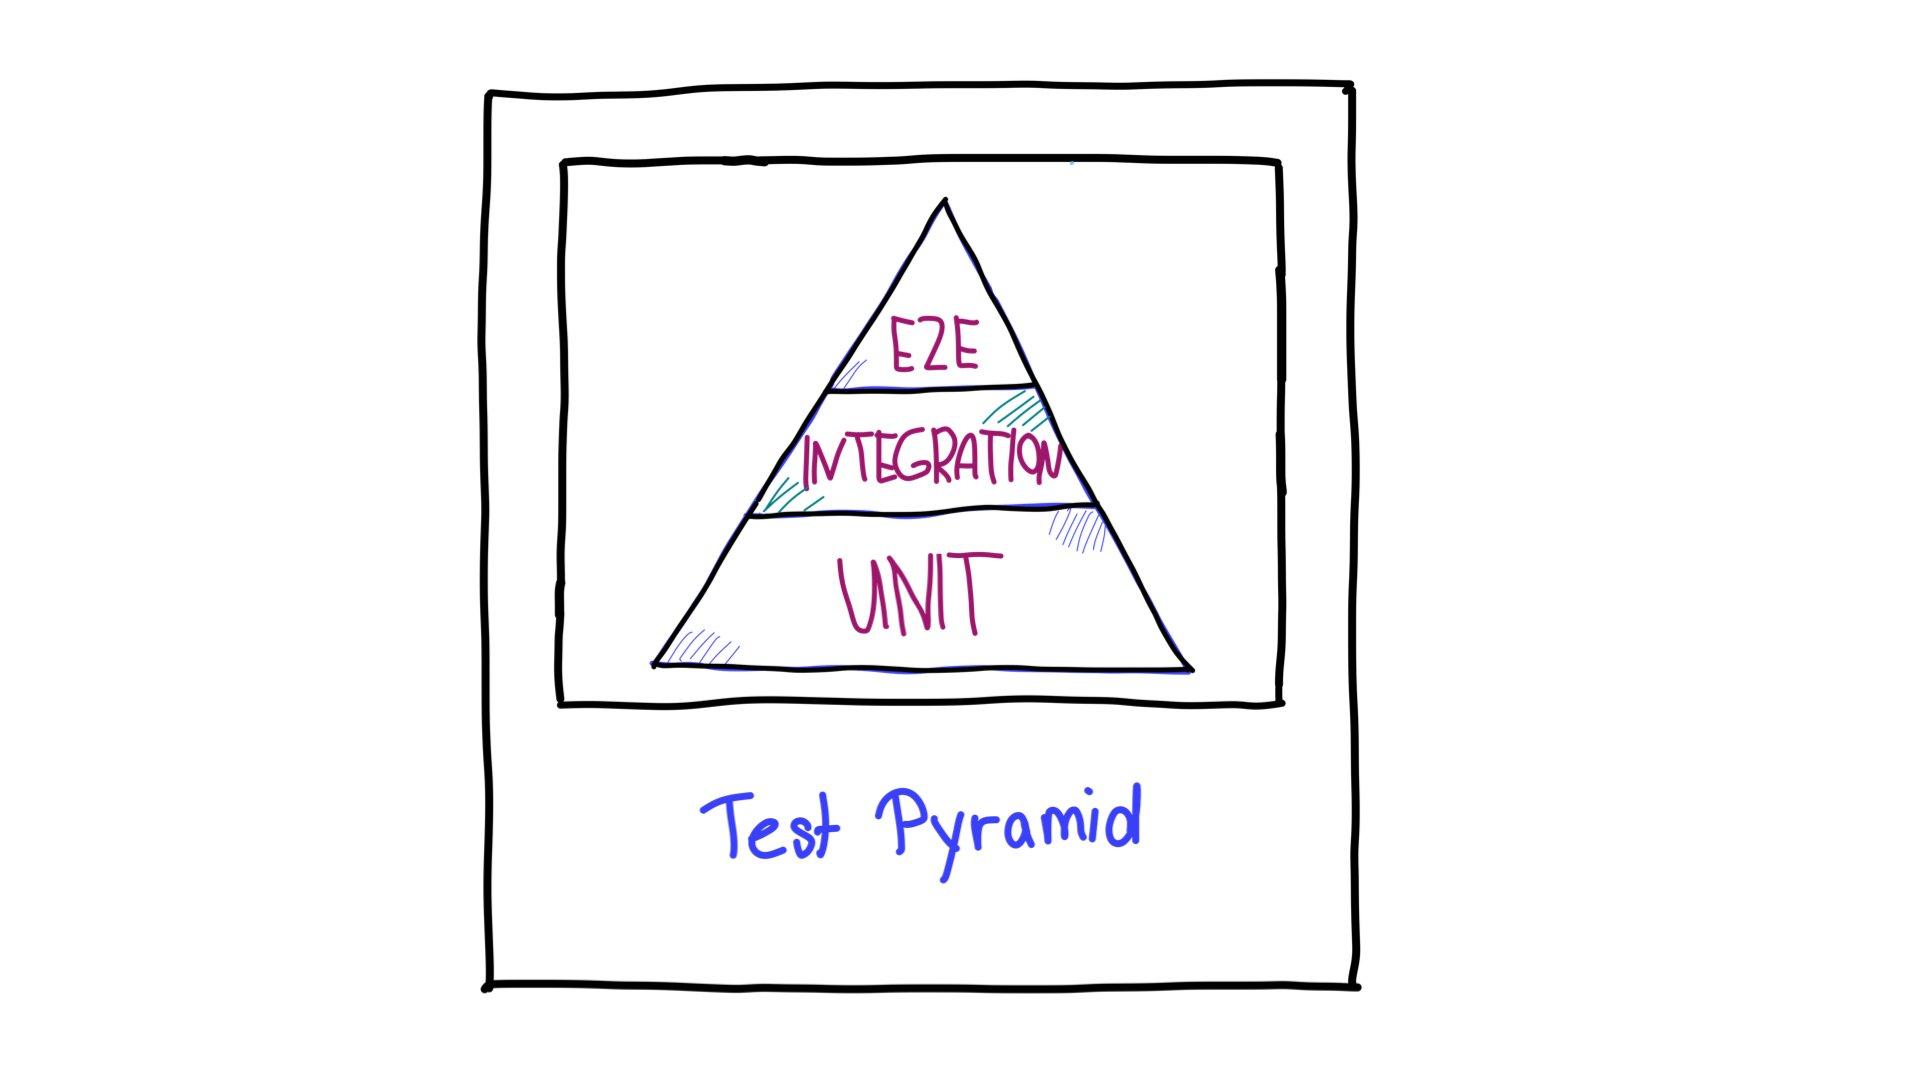 टेस्टिंग पिरामिड, जिसमें सबसे ऊपर एंड-टू-एंड (E2E) टेस्ट, बीच में इंटिग्रेशन टेस्ट, और सबसे नीचे यूनिट टेस्ट होते हैं.